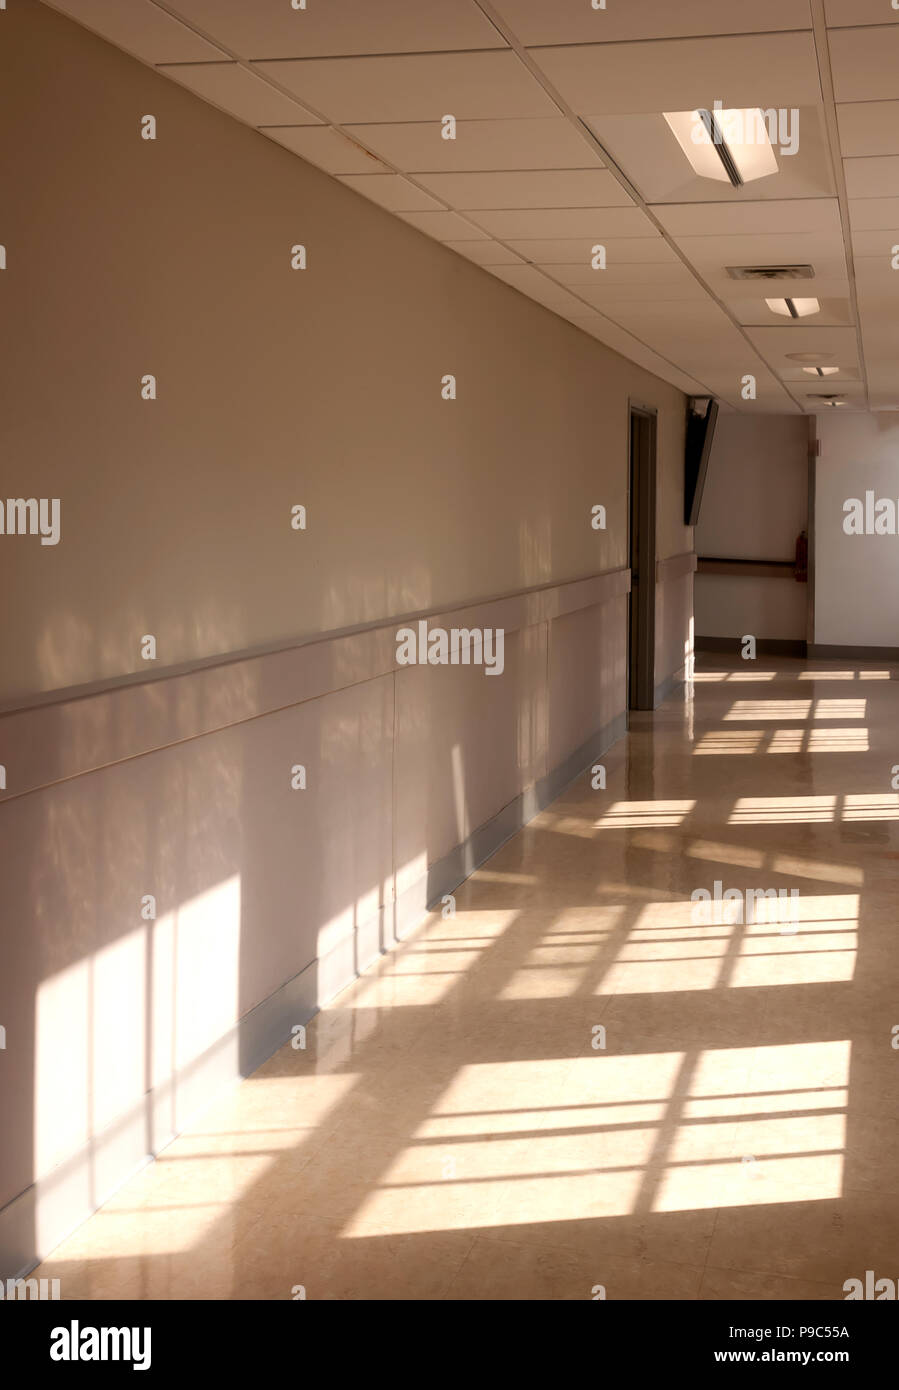 La luz del sol brillando a través de ventanas que dan a un pasillo. Foto de stock